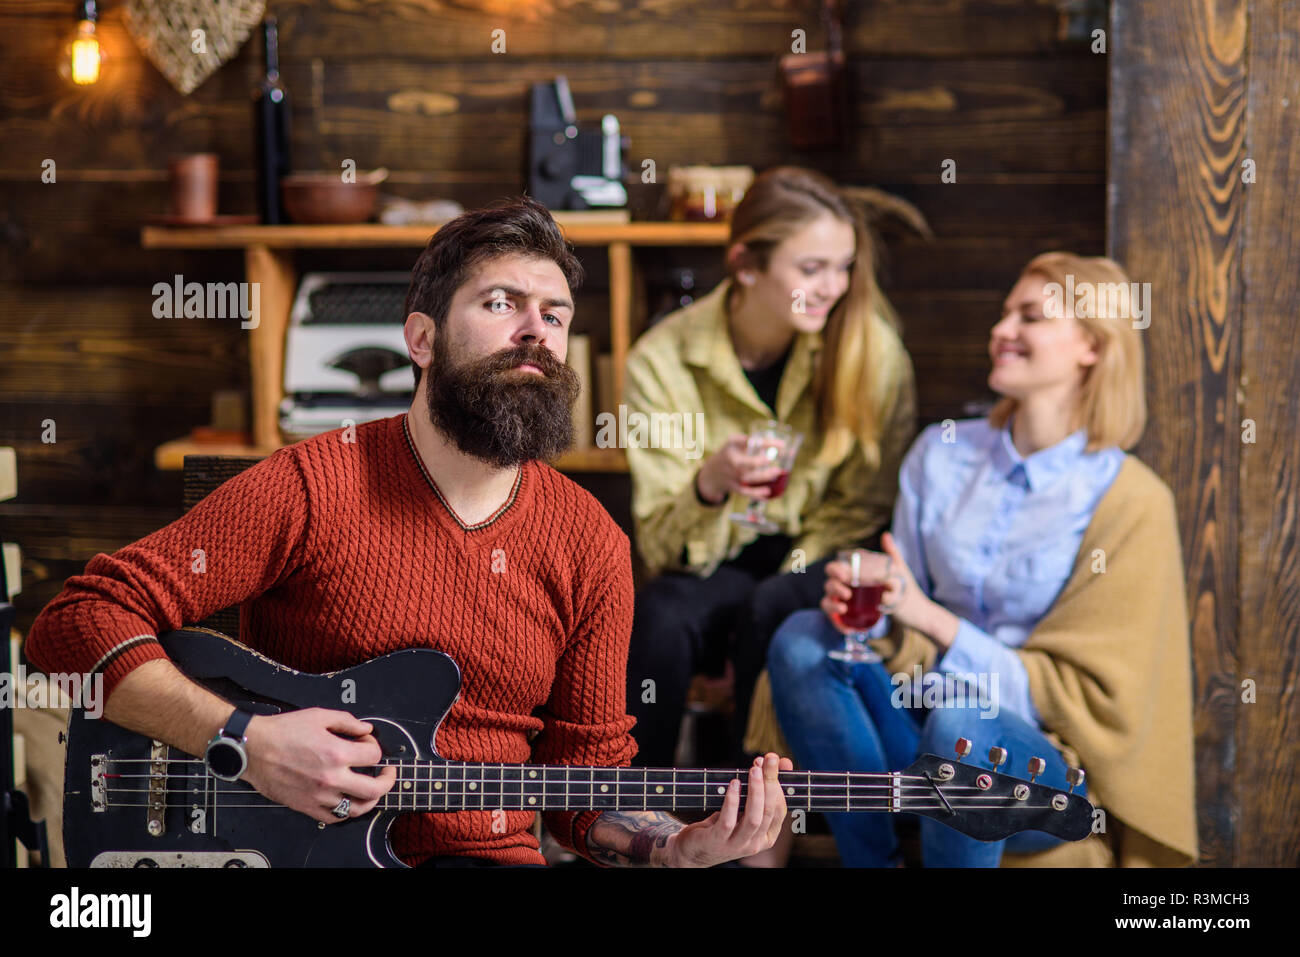 Uomo con barba elegante godendo di processo creativo. Musicista divertente la moglie e la figlia. Ragazze con volto sorridente ascoltando musica, felicità c Foto Stock